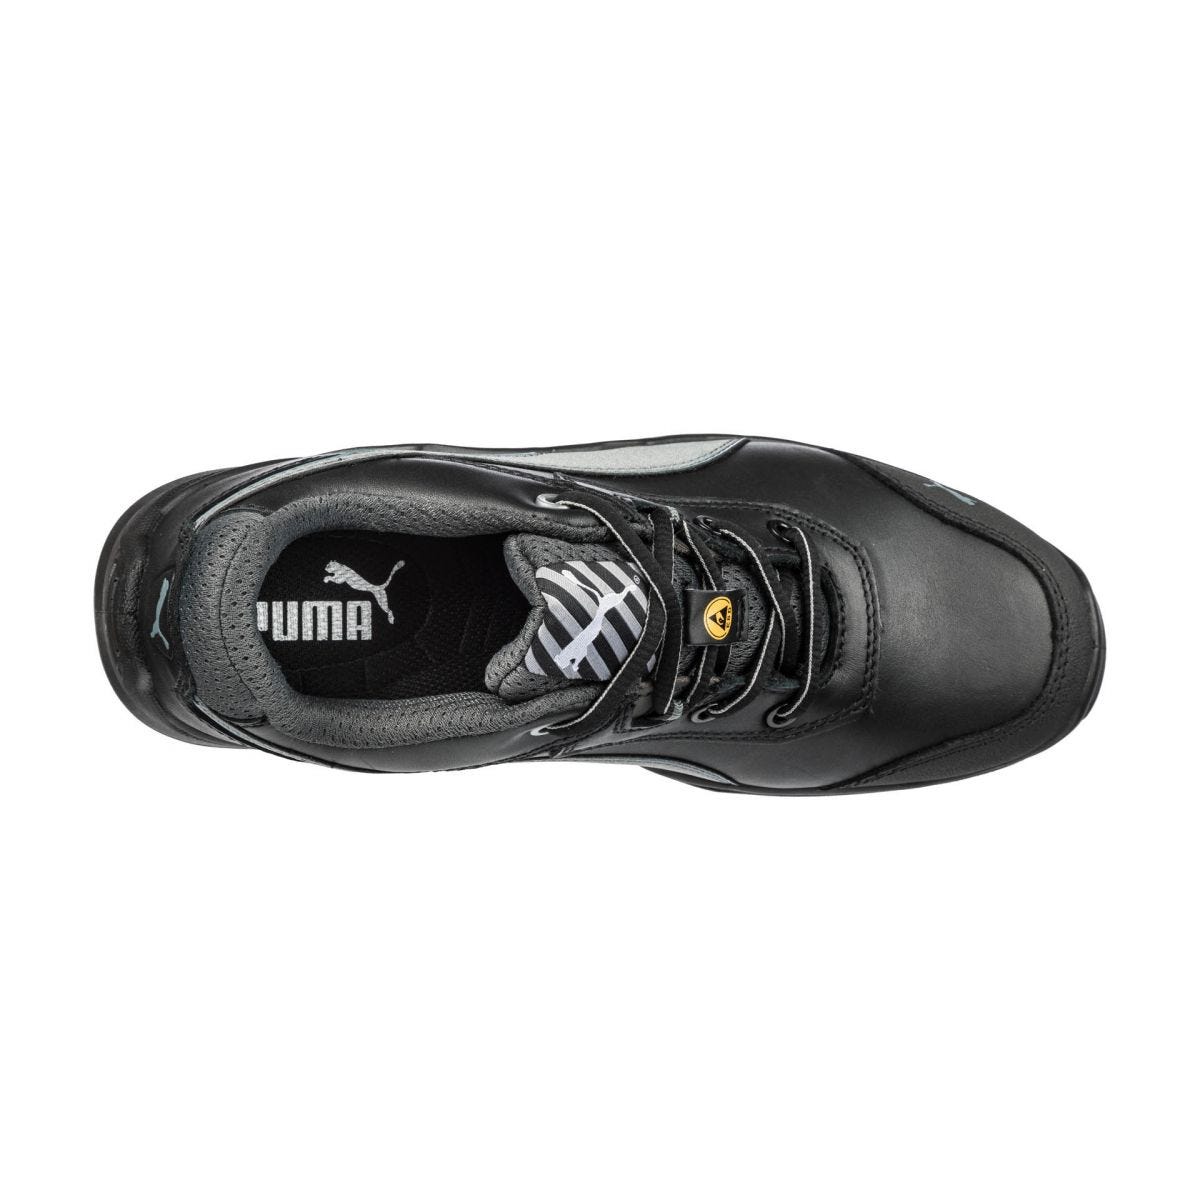 Chaussures de sécurité Argon RX low S3 ESD SRC noir - Puma - Taille 49 3